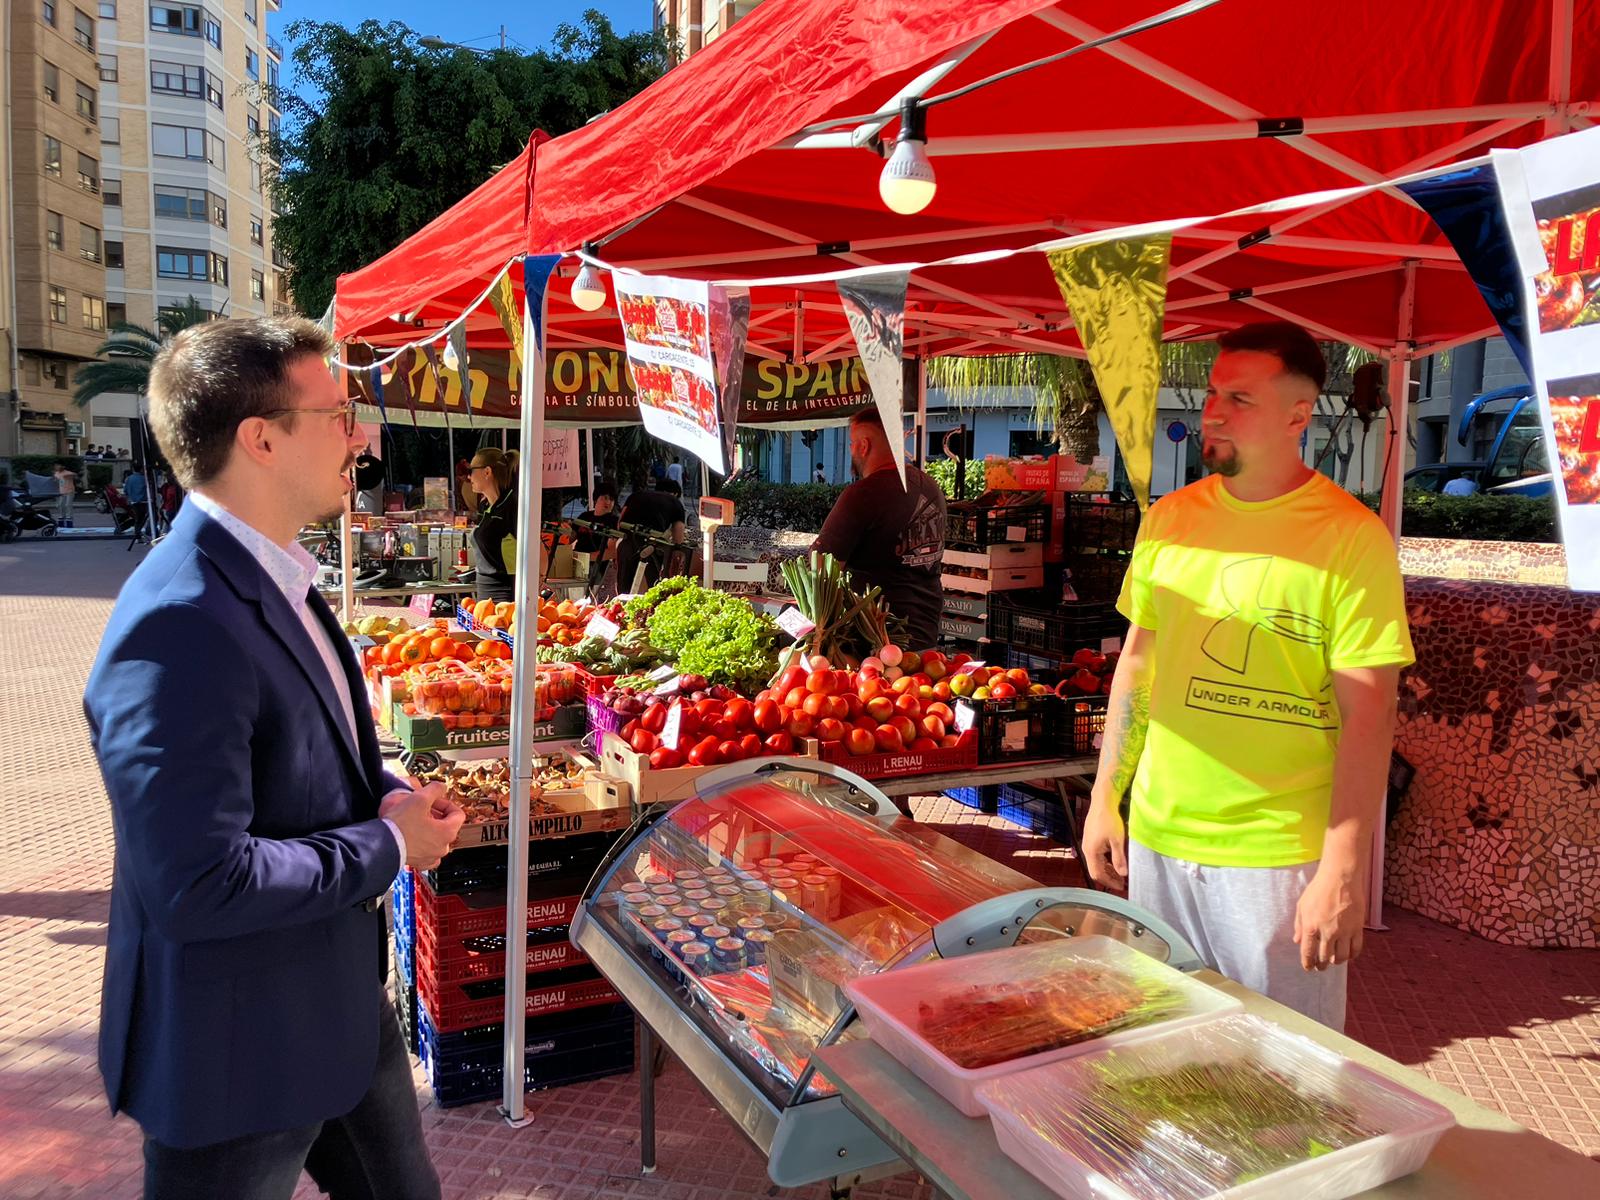 Mercat de Barri reuneix el millor del comerç local en la plaça Fadrell